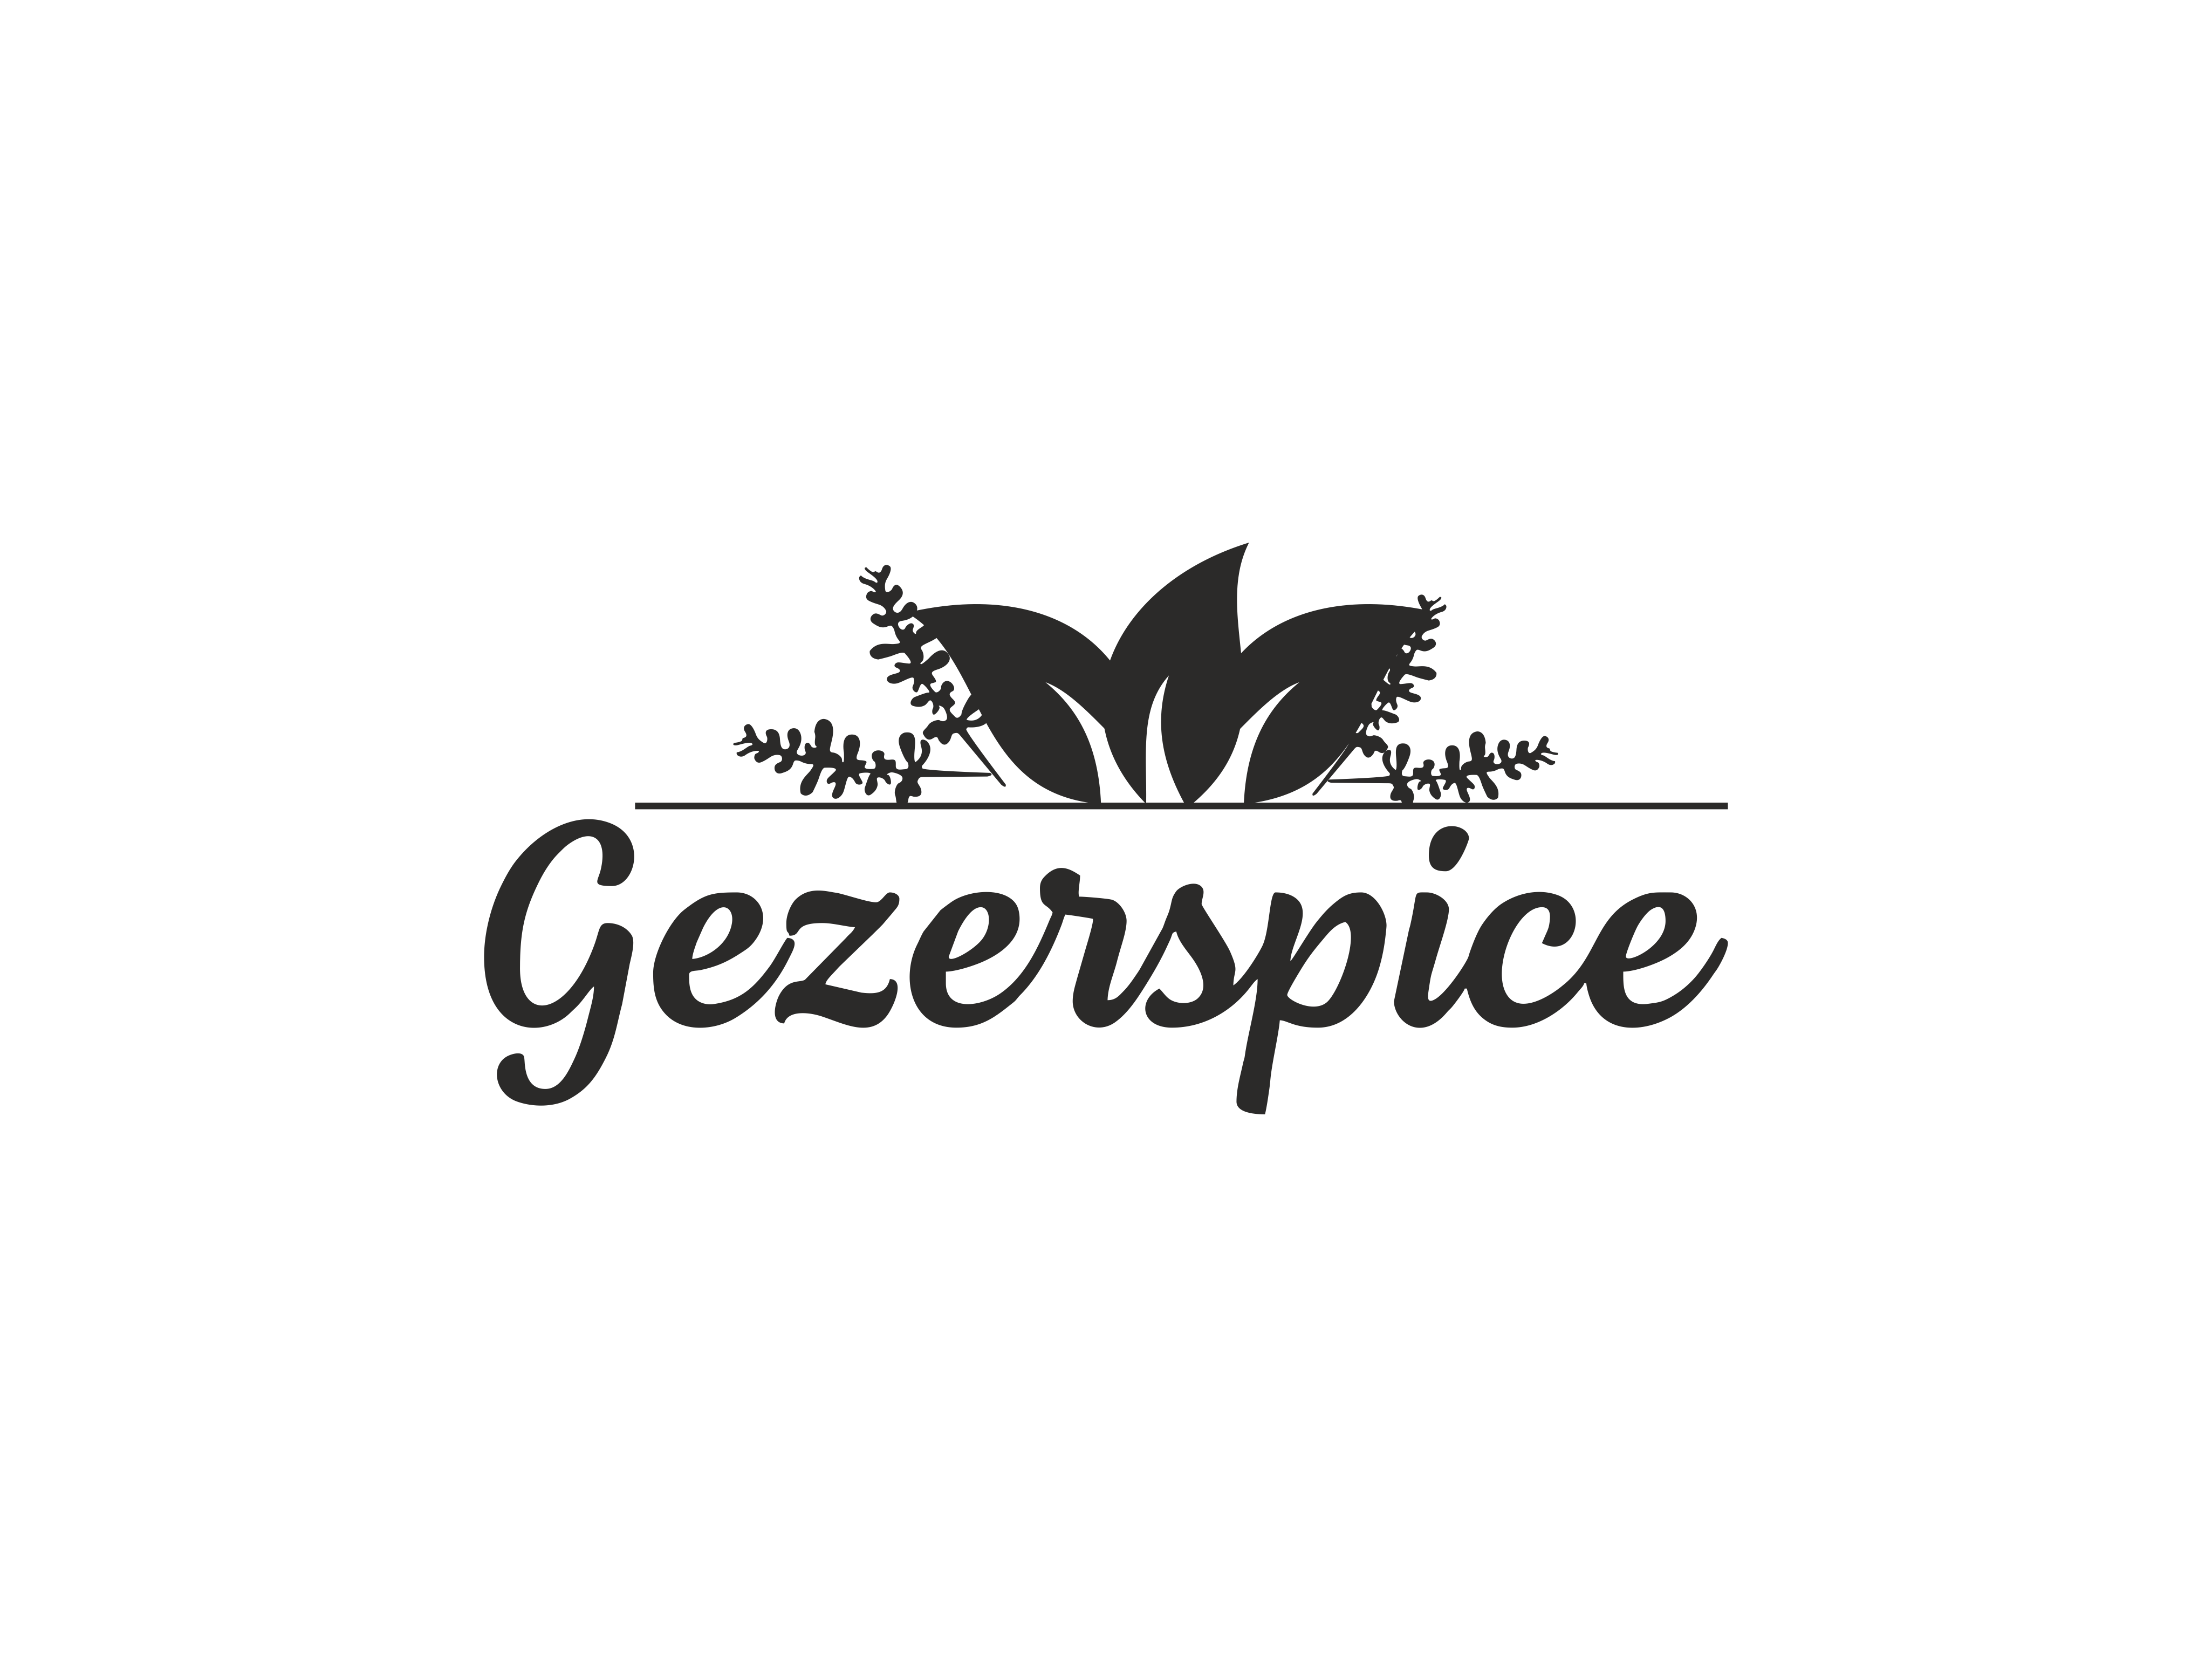 Gezerspice